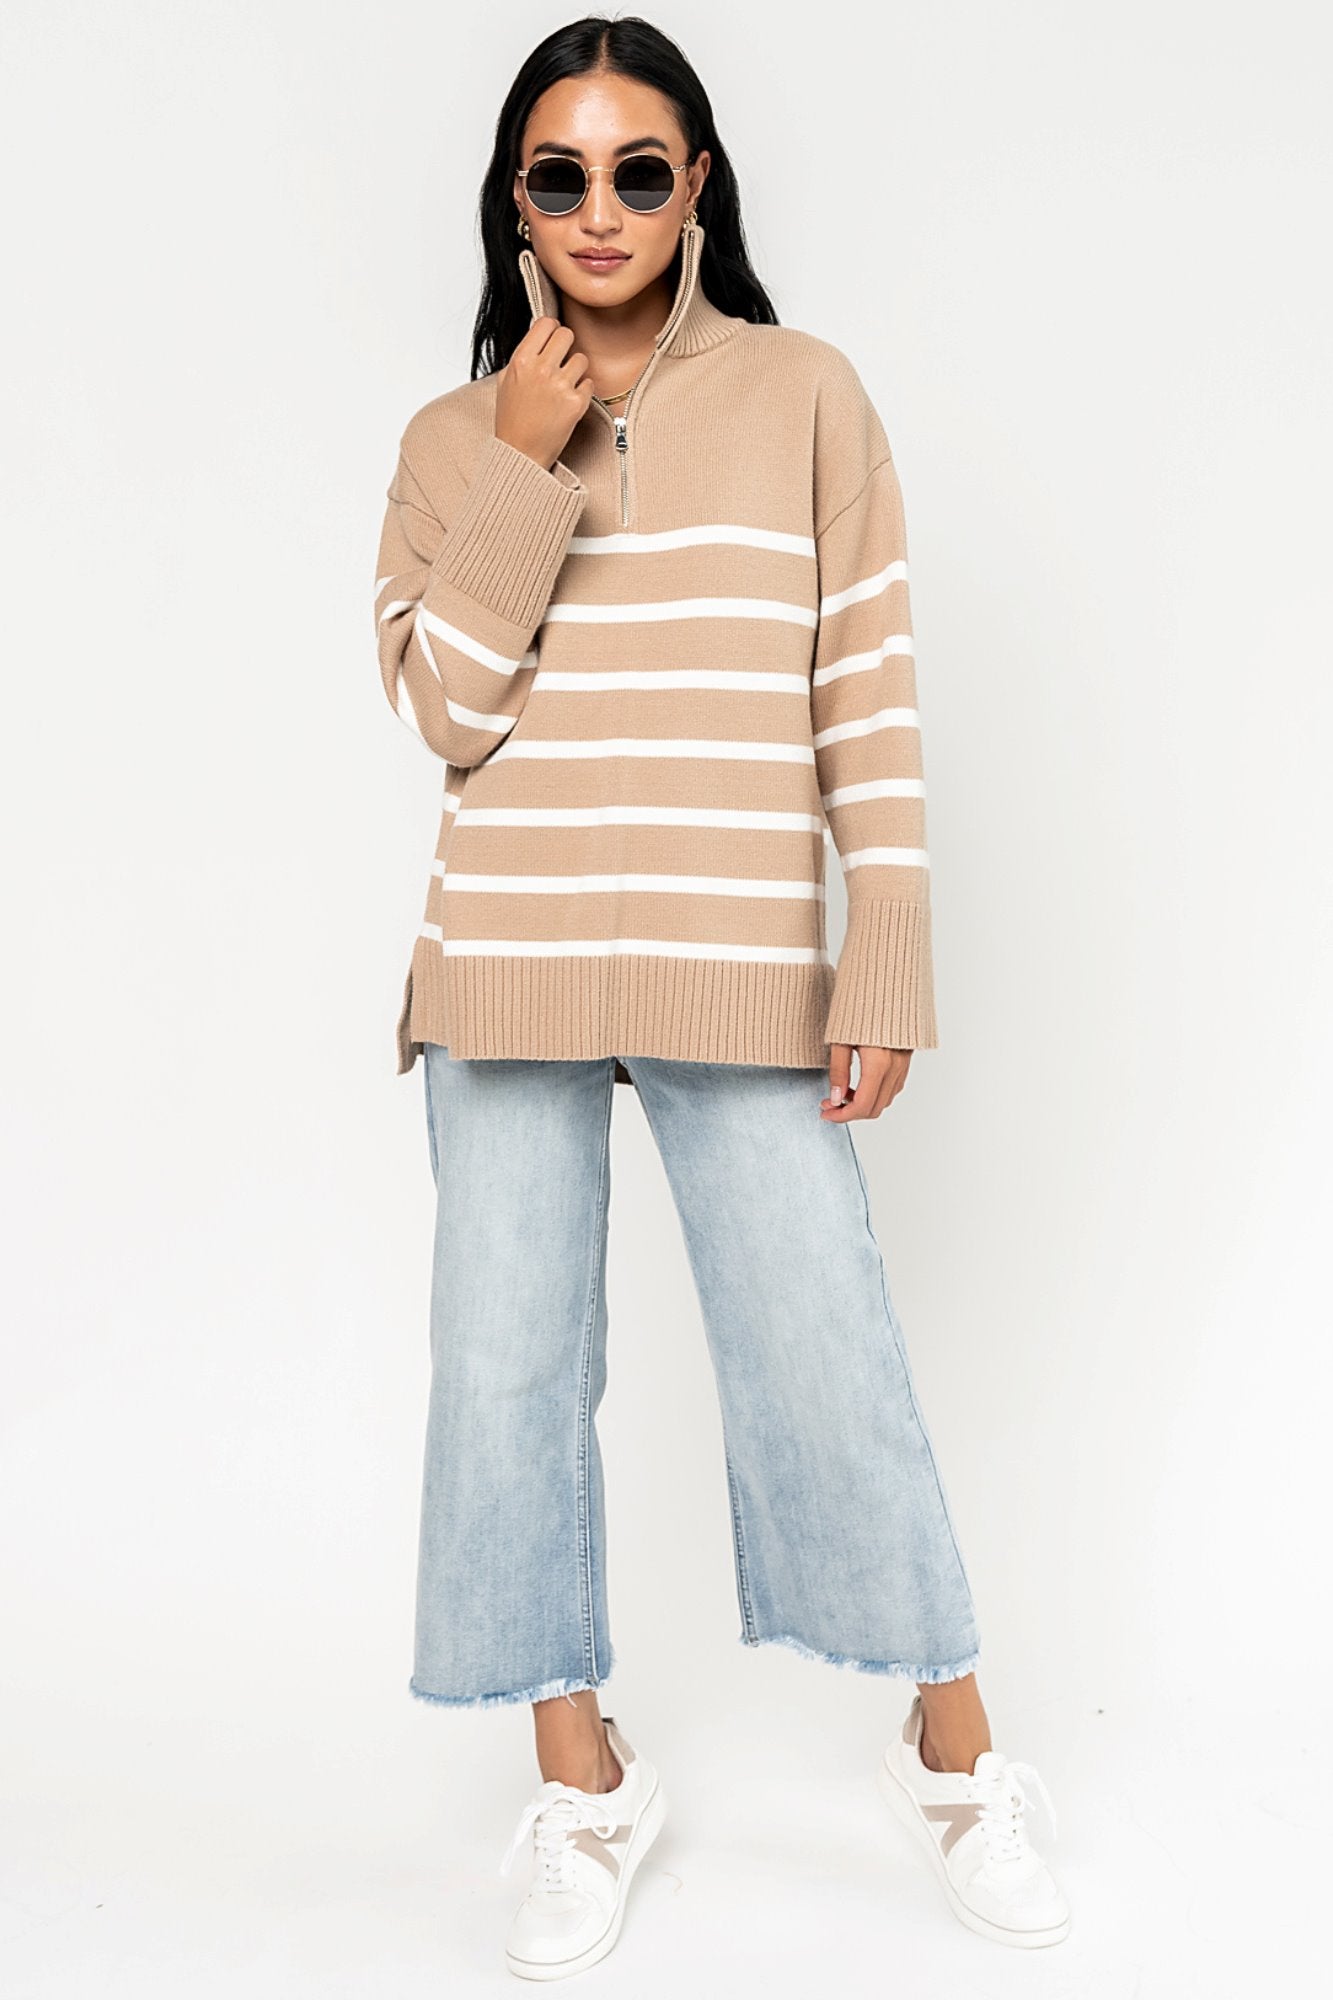 Rowan Sweater in Fawn Holley Girl 